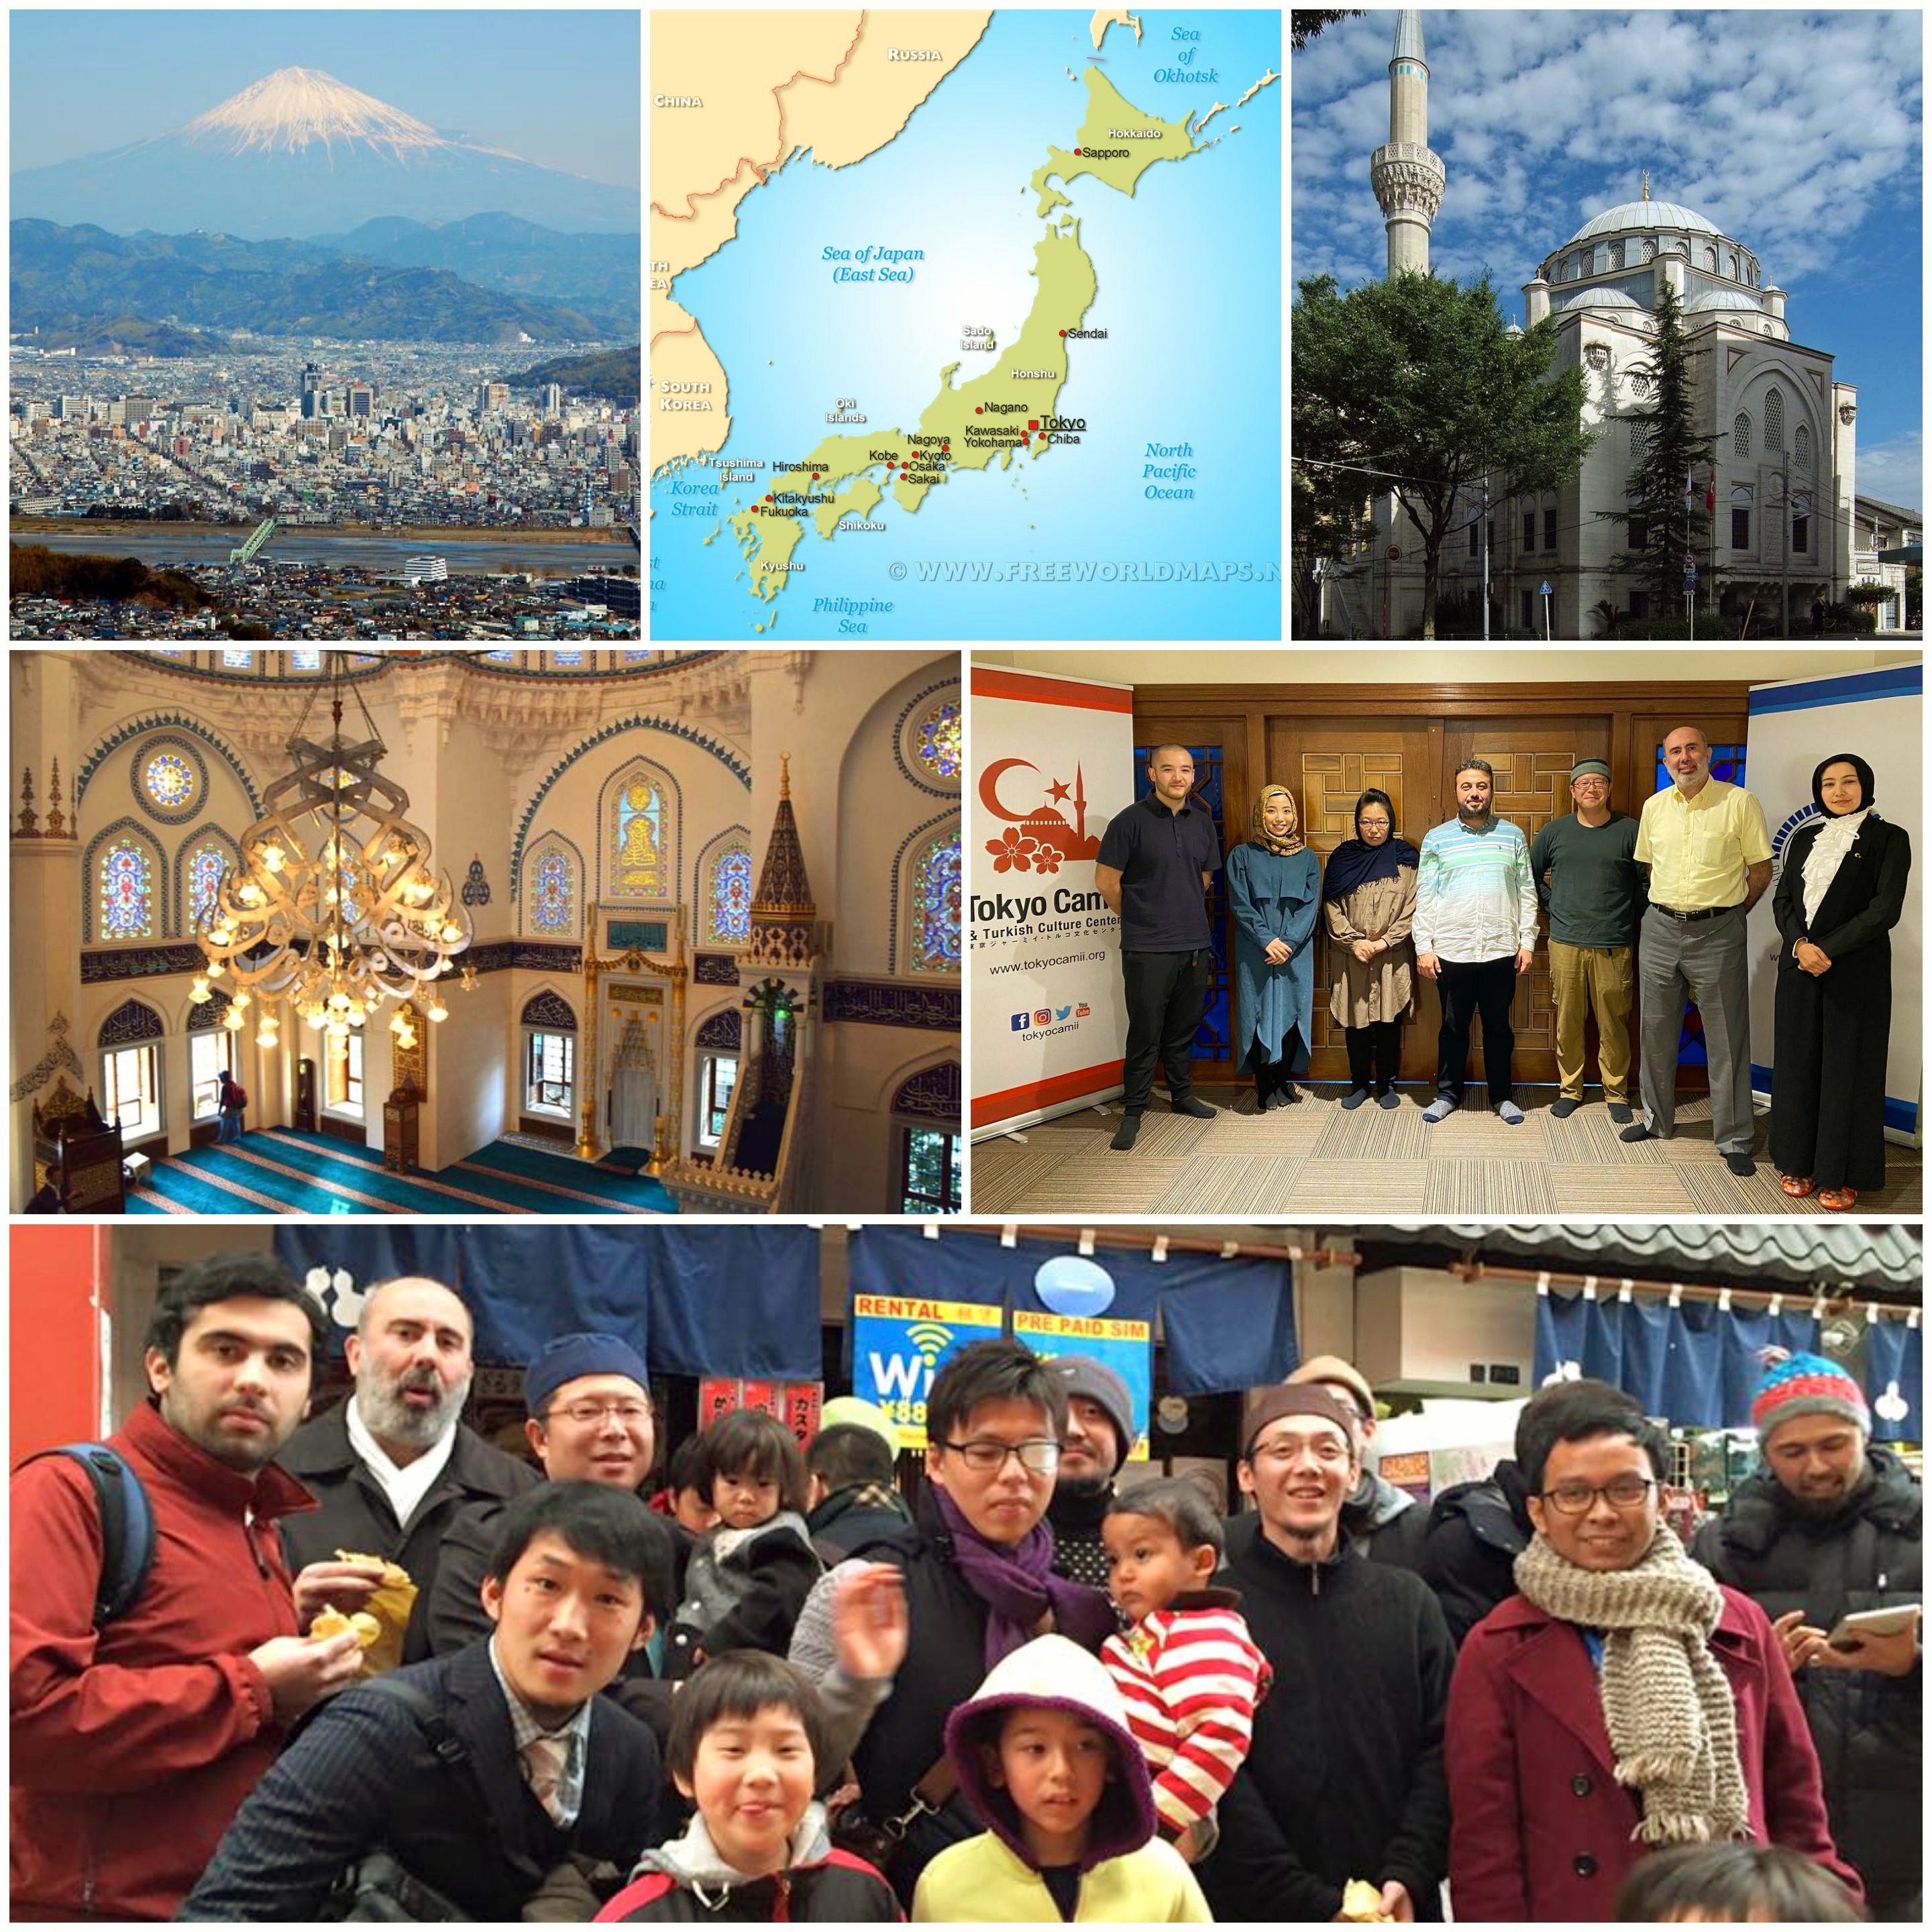 مازالت الجوامع في اليابان تخطب بلغات وافدة غير محلية باستثناء مسجد واحد